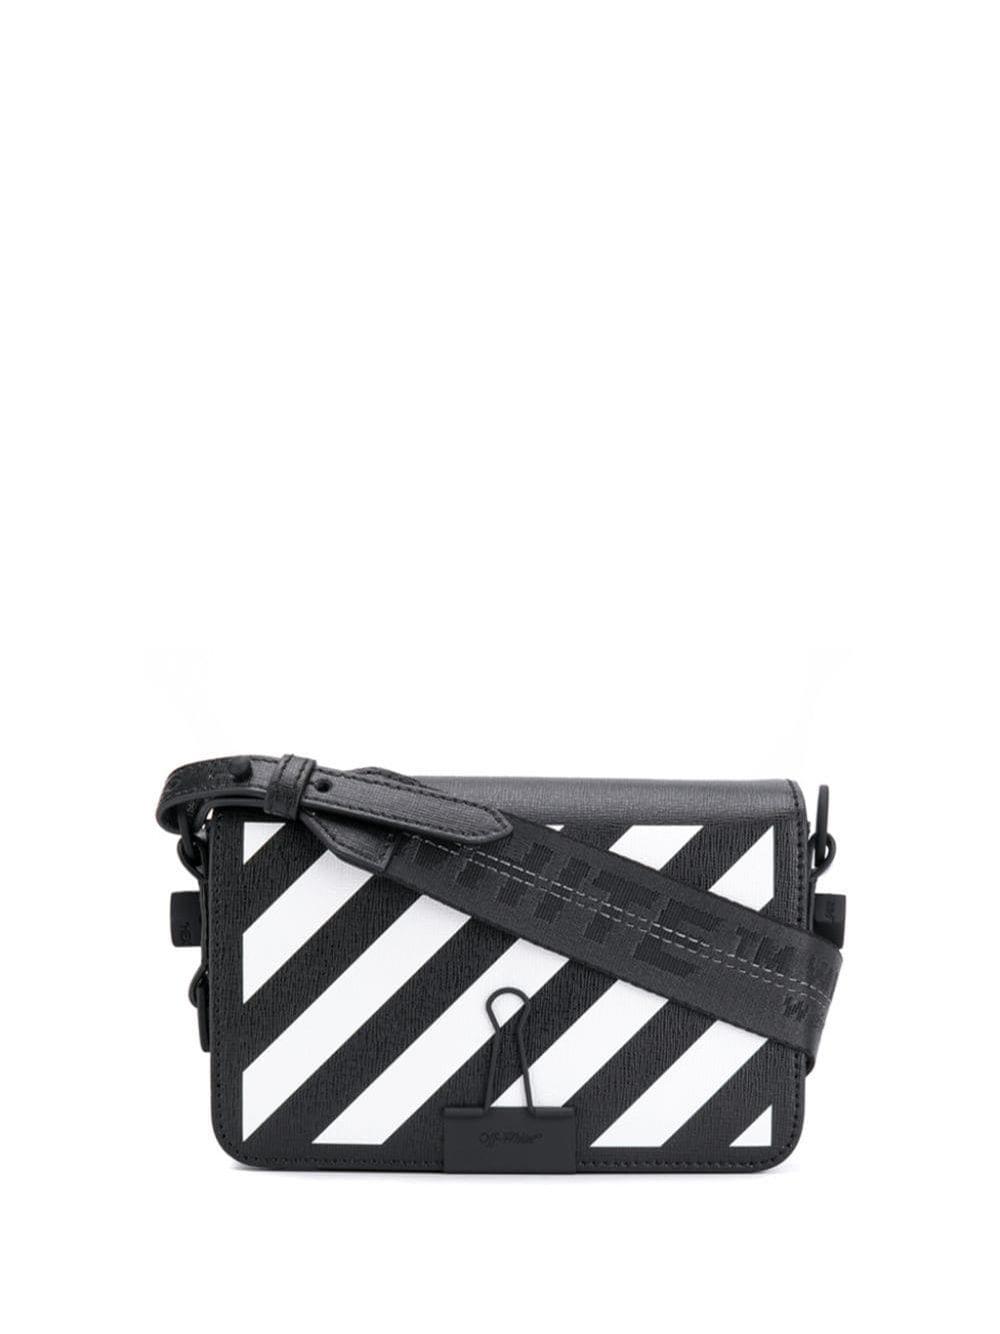 Off-White c/o Virgil Abloh Leather Diagonal Striped Shoulder Bag in Black - Save 33% - Lyst